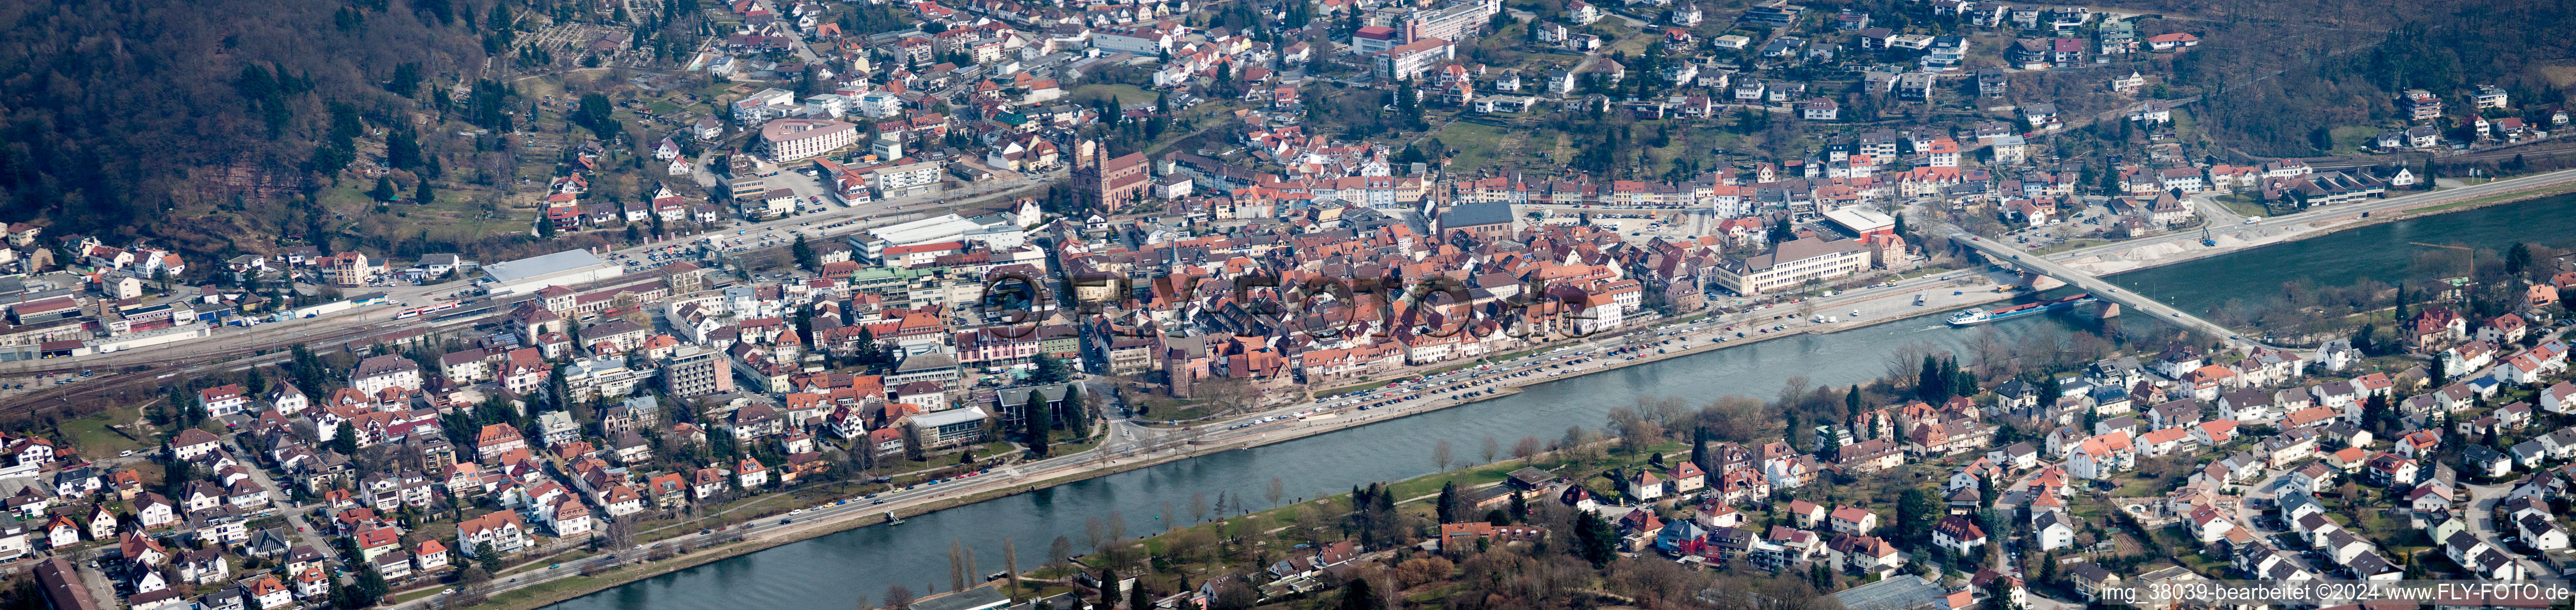 Panorama Perspektive des Ortskern am Uferbereich des Neckar - Flußverlaufes in Eberbach im Bundesland Baden-Württemberg, Deutschland